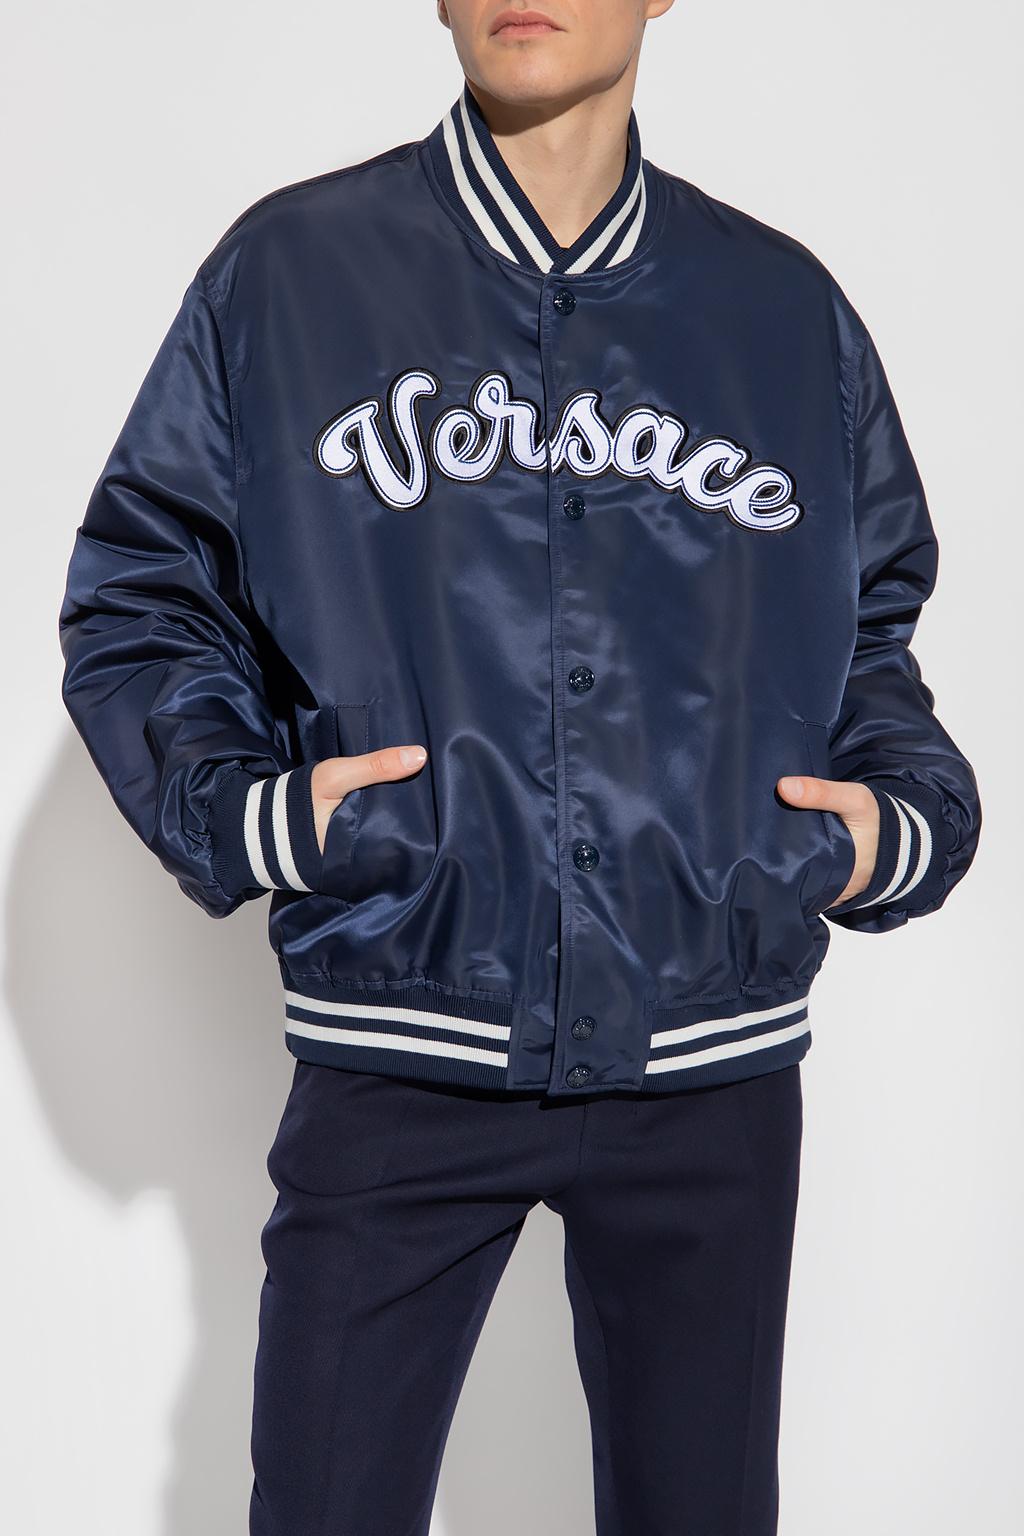 Versace Bomber Jacket Blue Hot Sale | website.jkuat.ac.ke